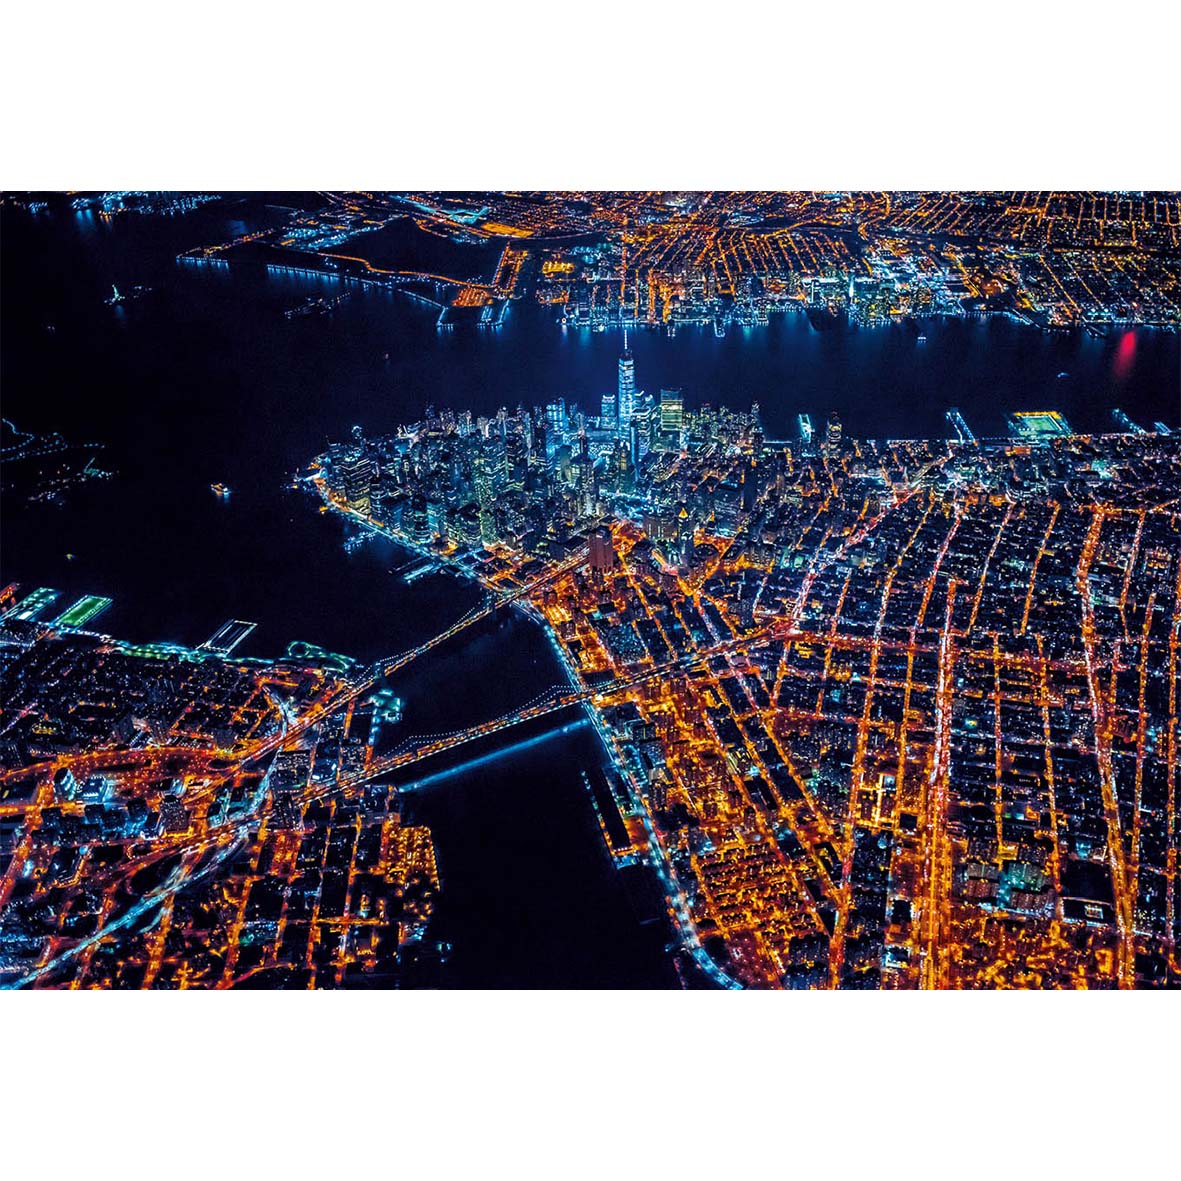 New York - Un siècle de photographies aériennes